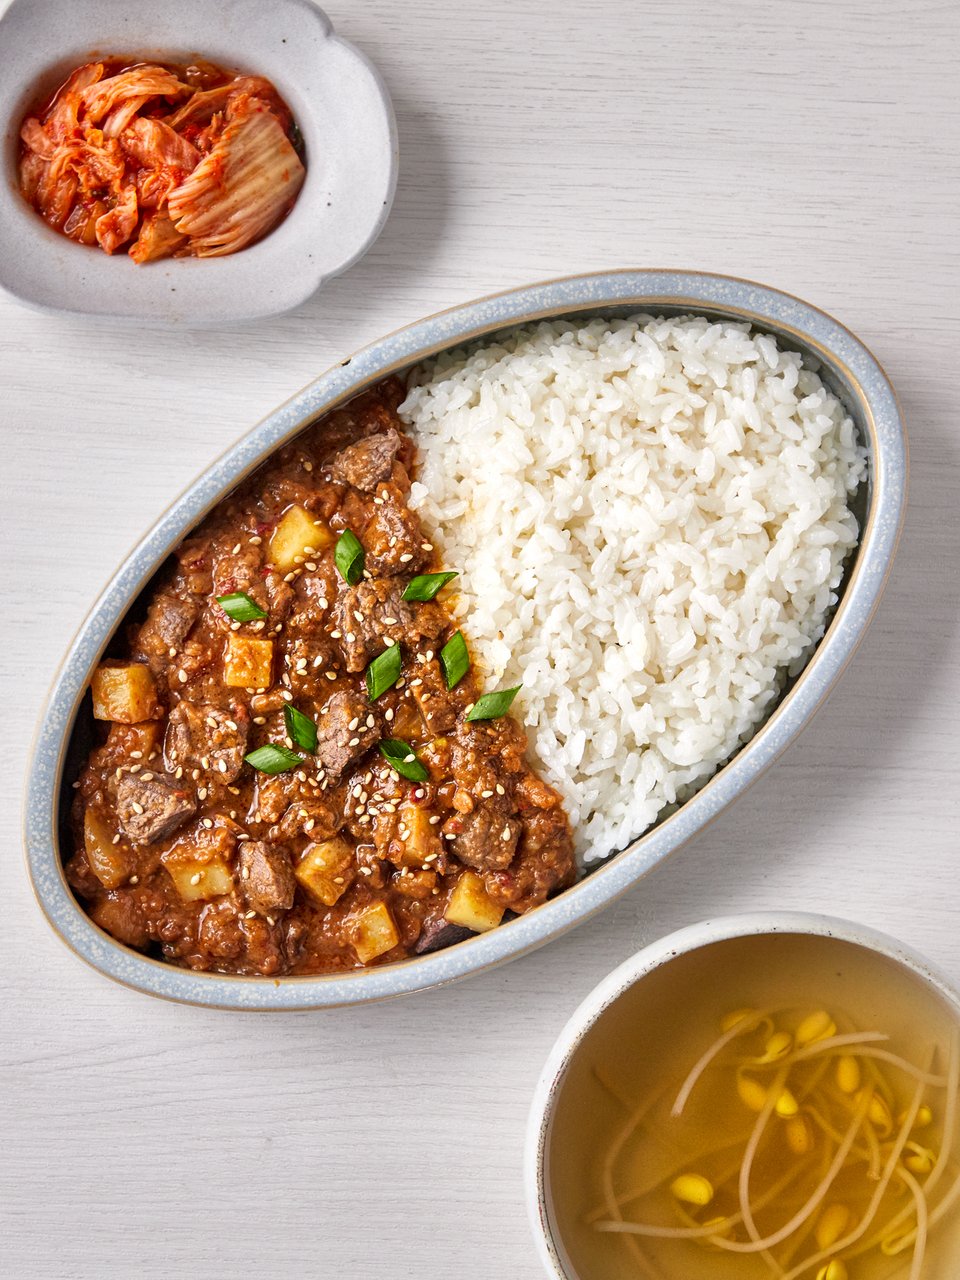 韓國食品-[Peacock] 牛肉麵豉拌飯醬 150g